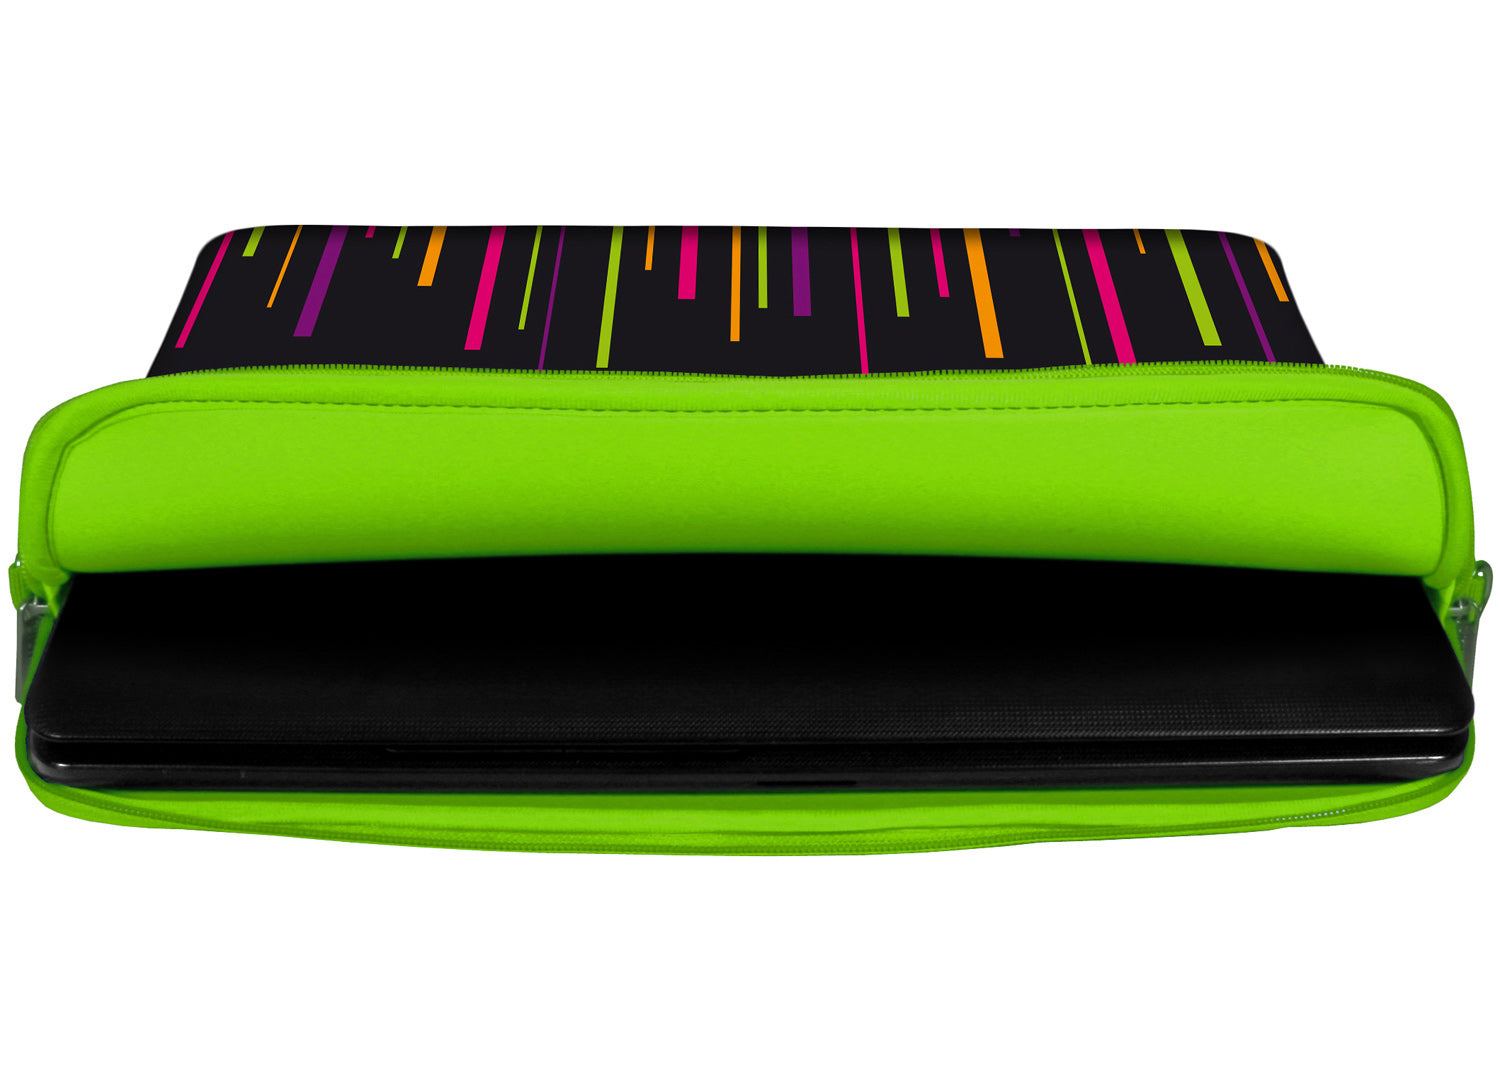 Innenansicht mit Schutzlippen der LS129 Colours Designer Laptop Tasche in grün aus wasserabweisendem Neopren